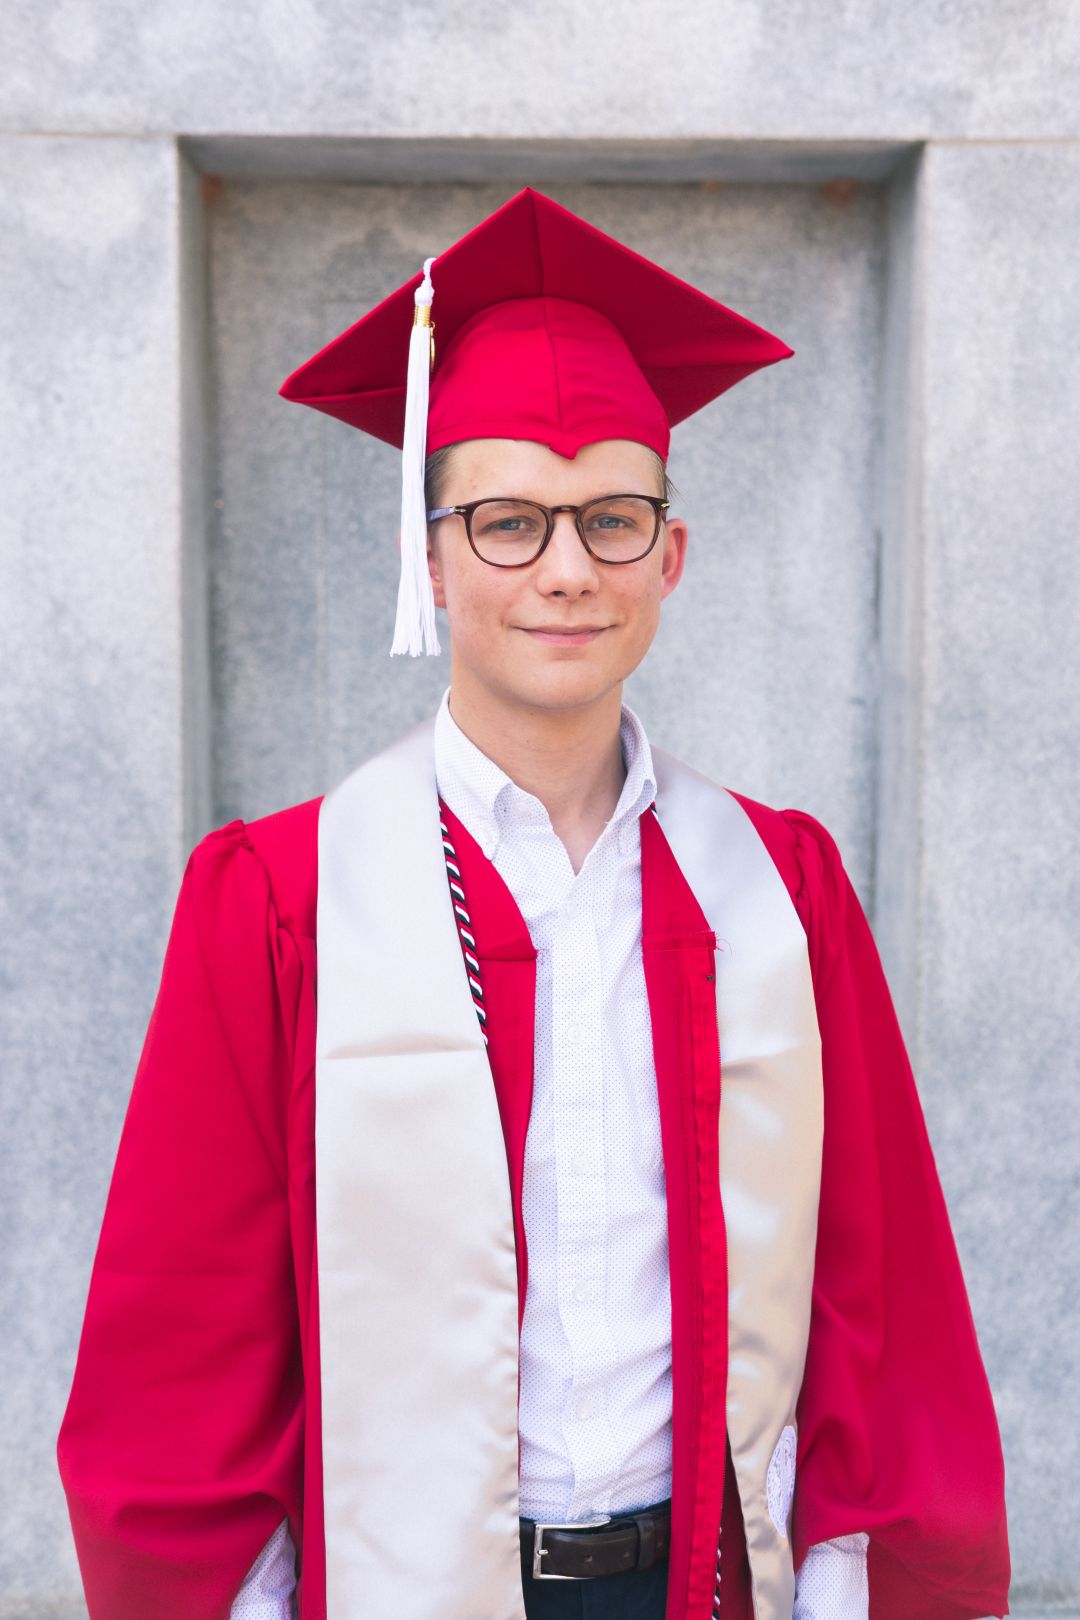 Male Graduation Portrait